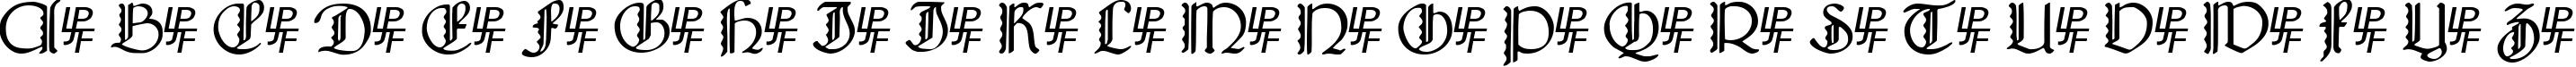 Пример написания английского алфавита шрифтом Bridgnorth Capitals